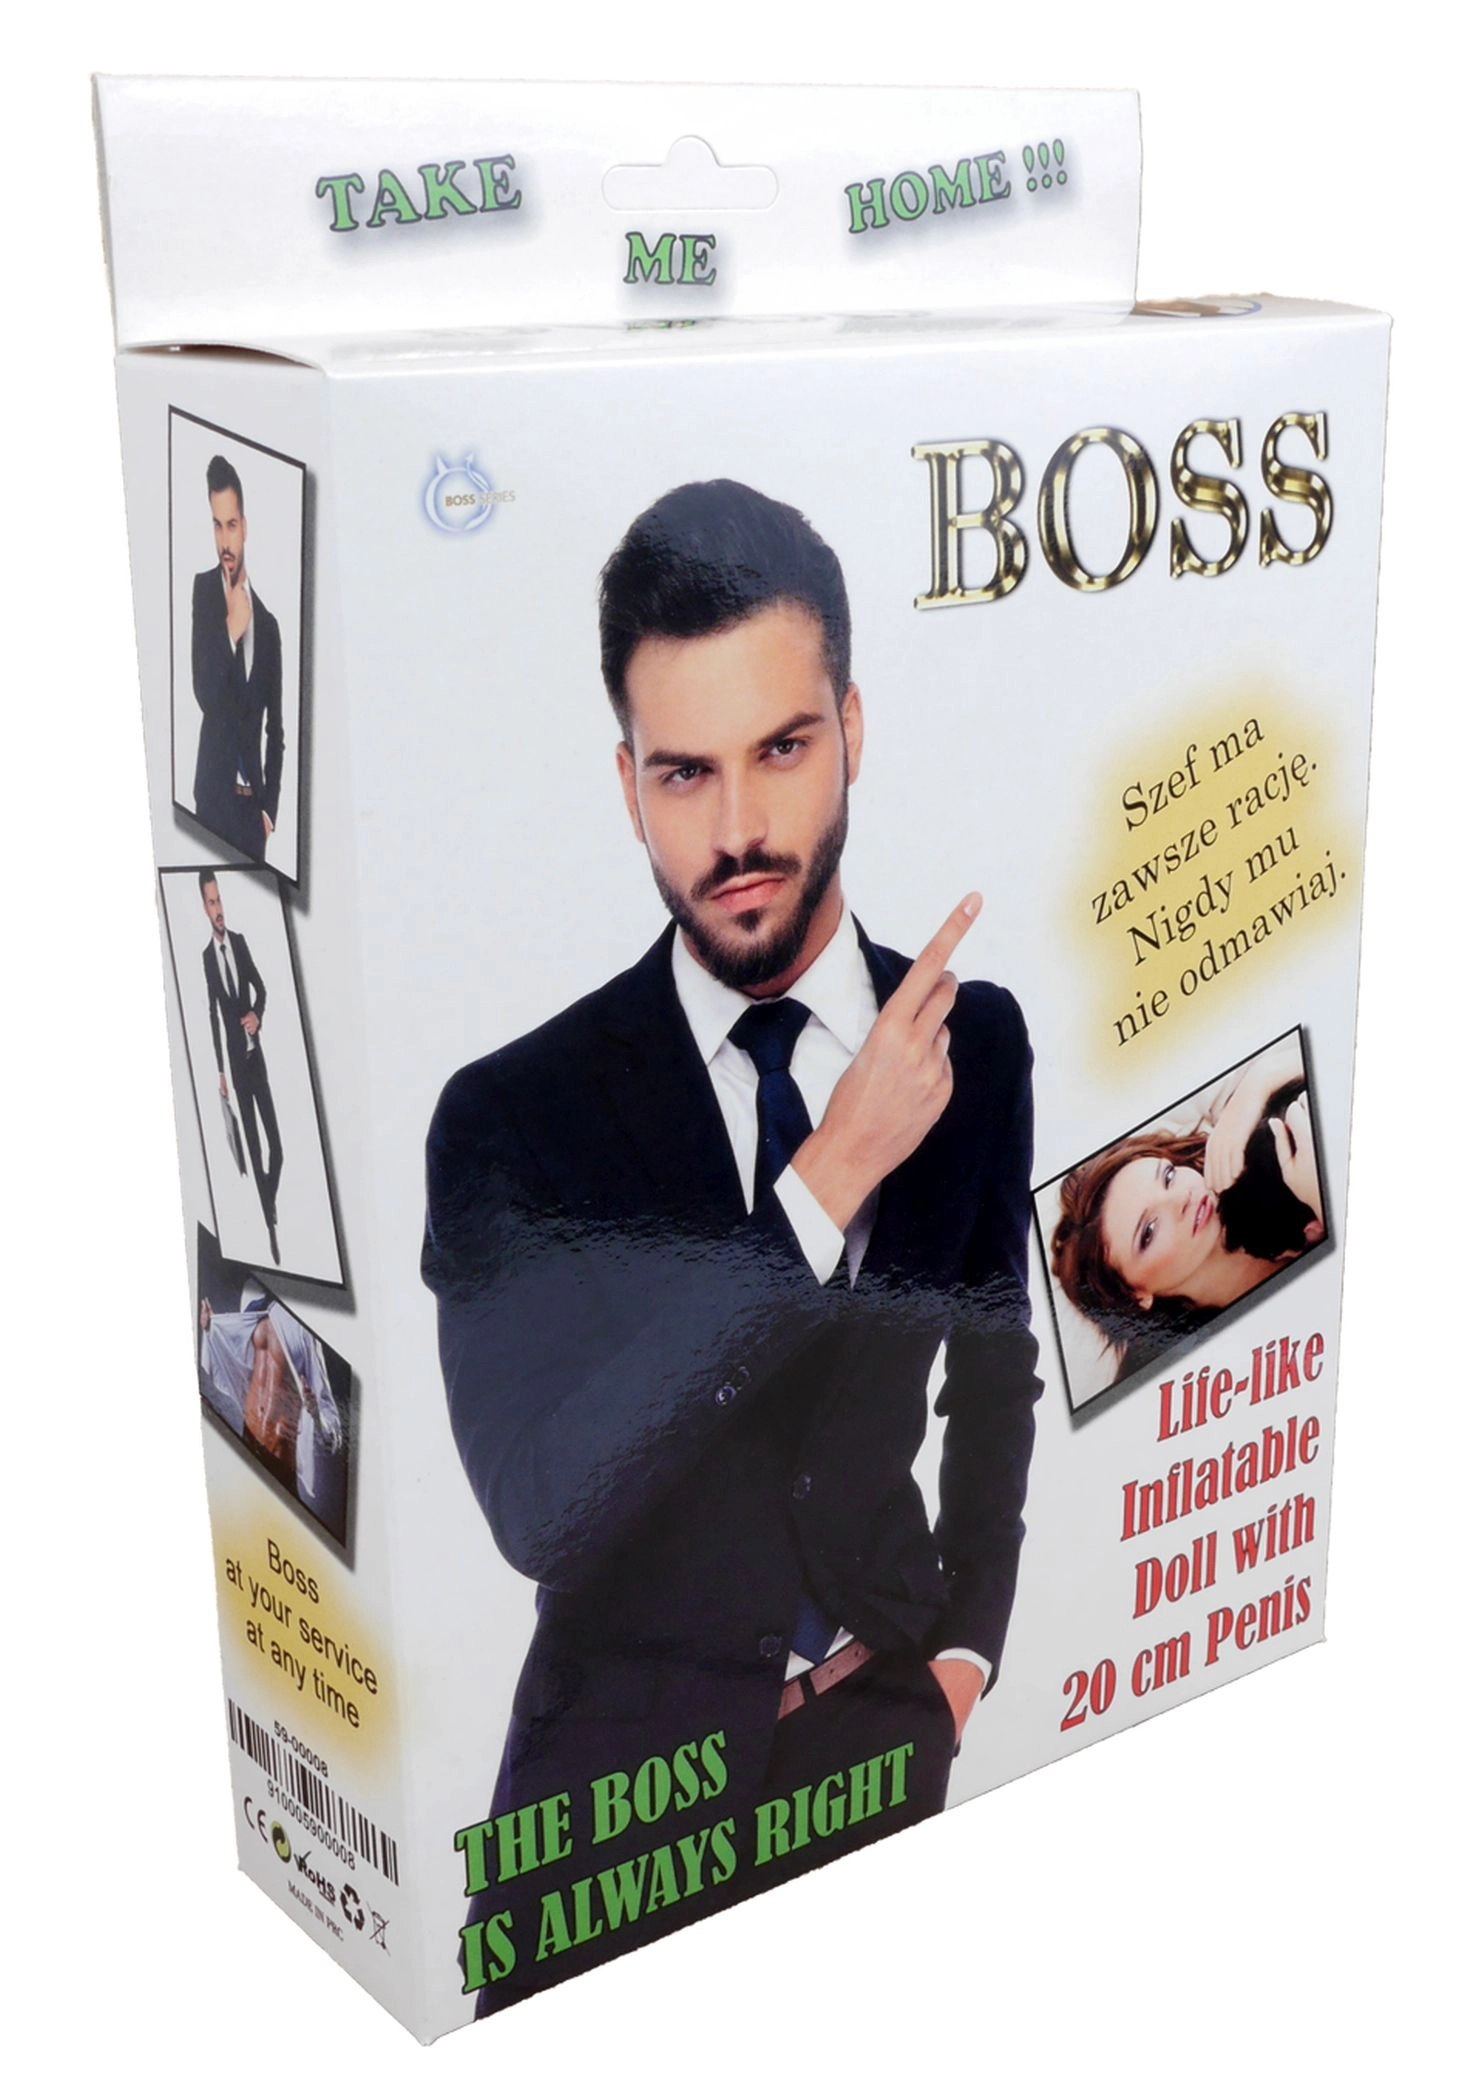 Boss Series - Boss - élethű gumiférfi